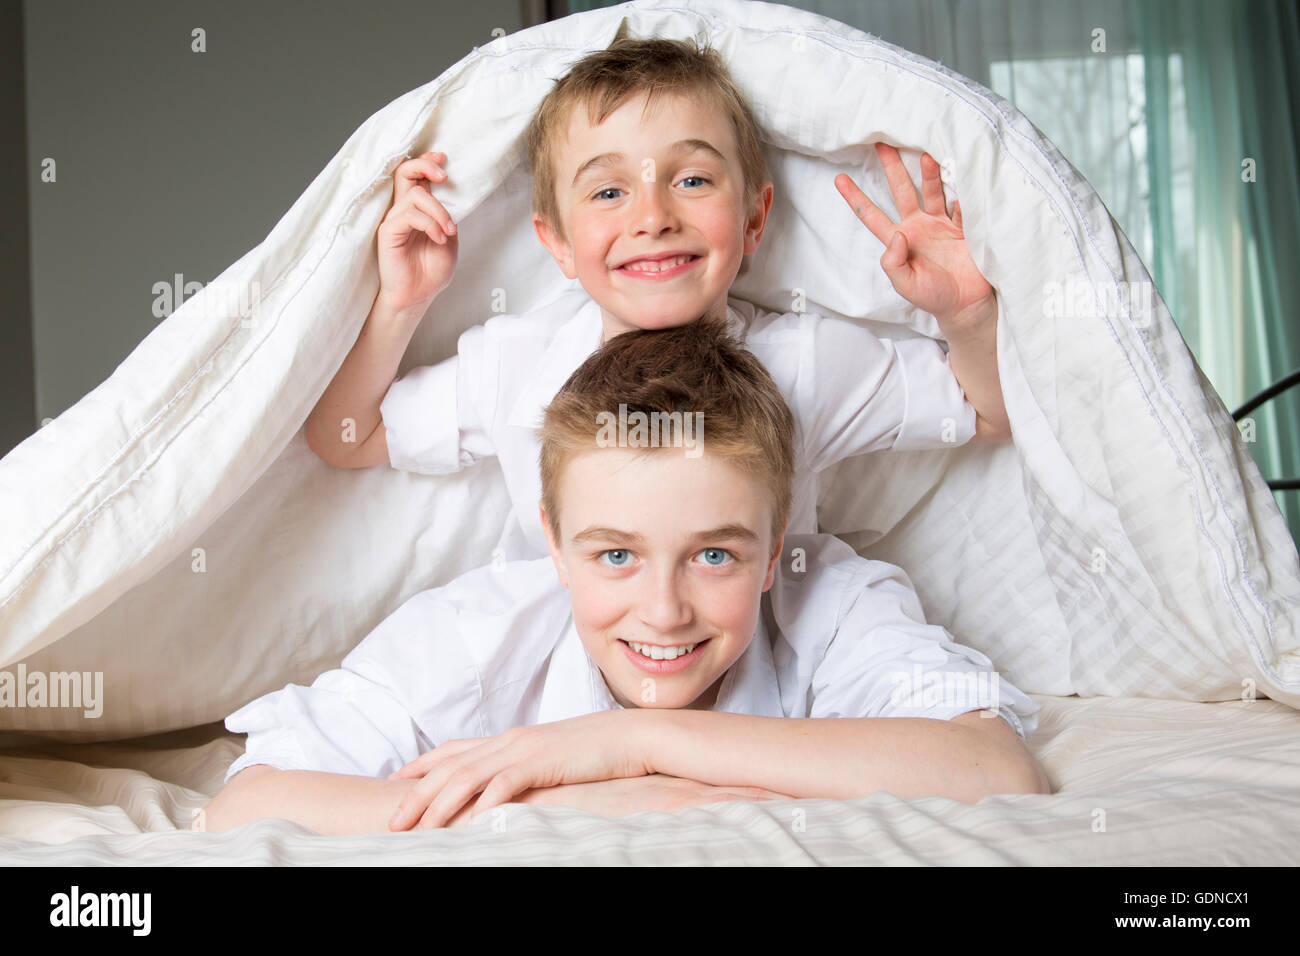 Junge im Bett unter einer weißen Decke Tagesdecke versteckt. Stockfoto